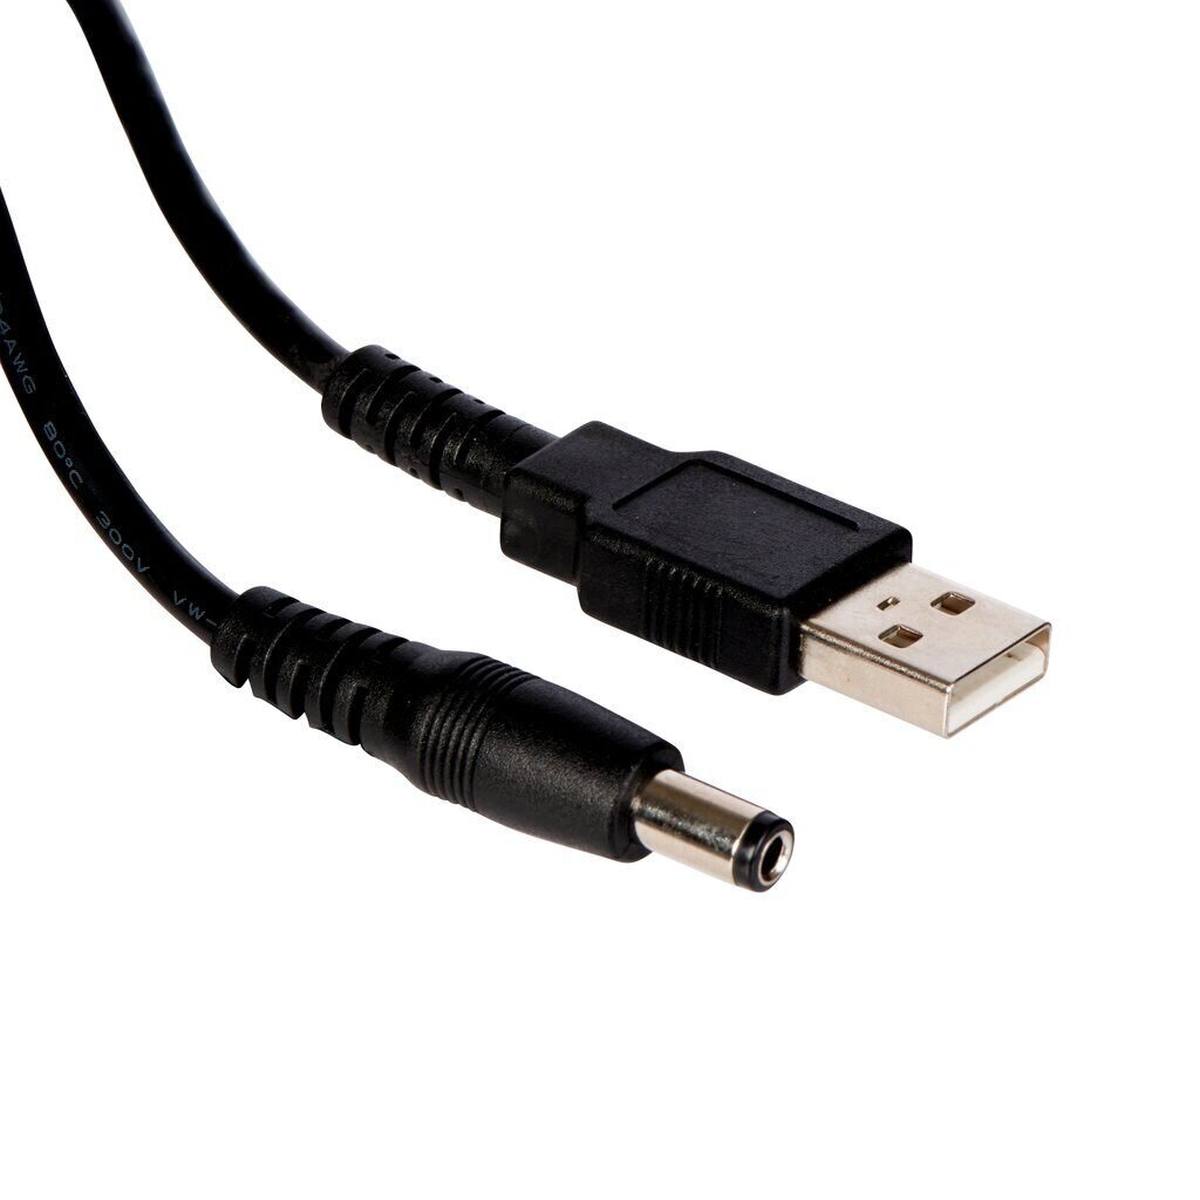 3M Peltor USB-Ladekabel, FR09